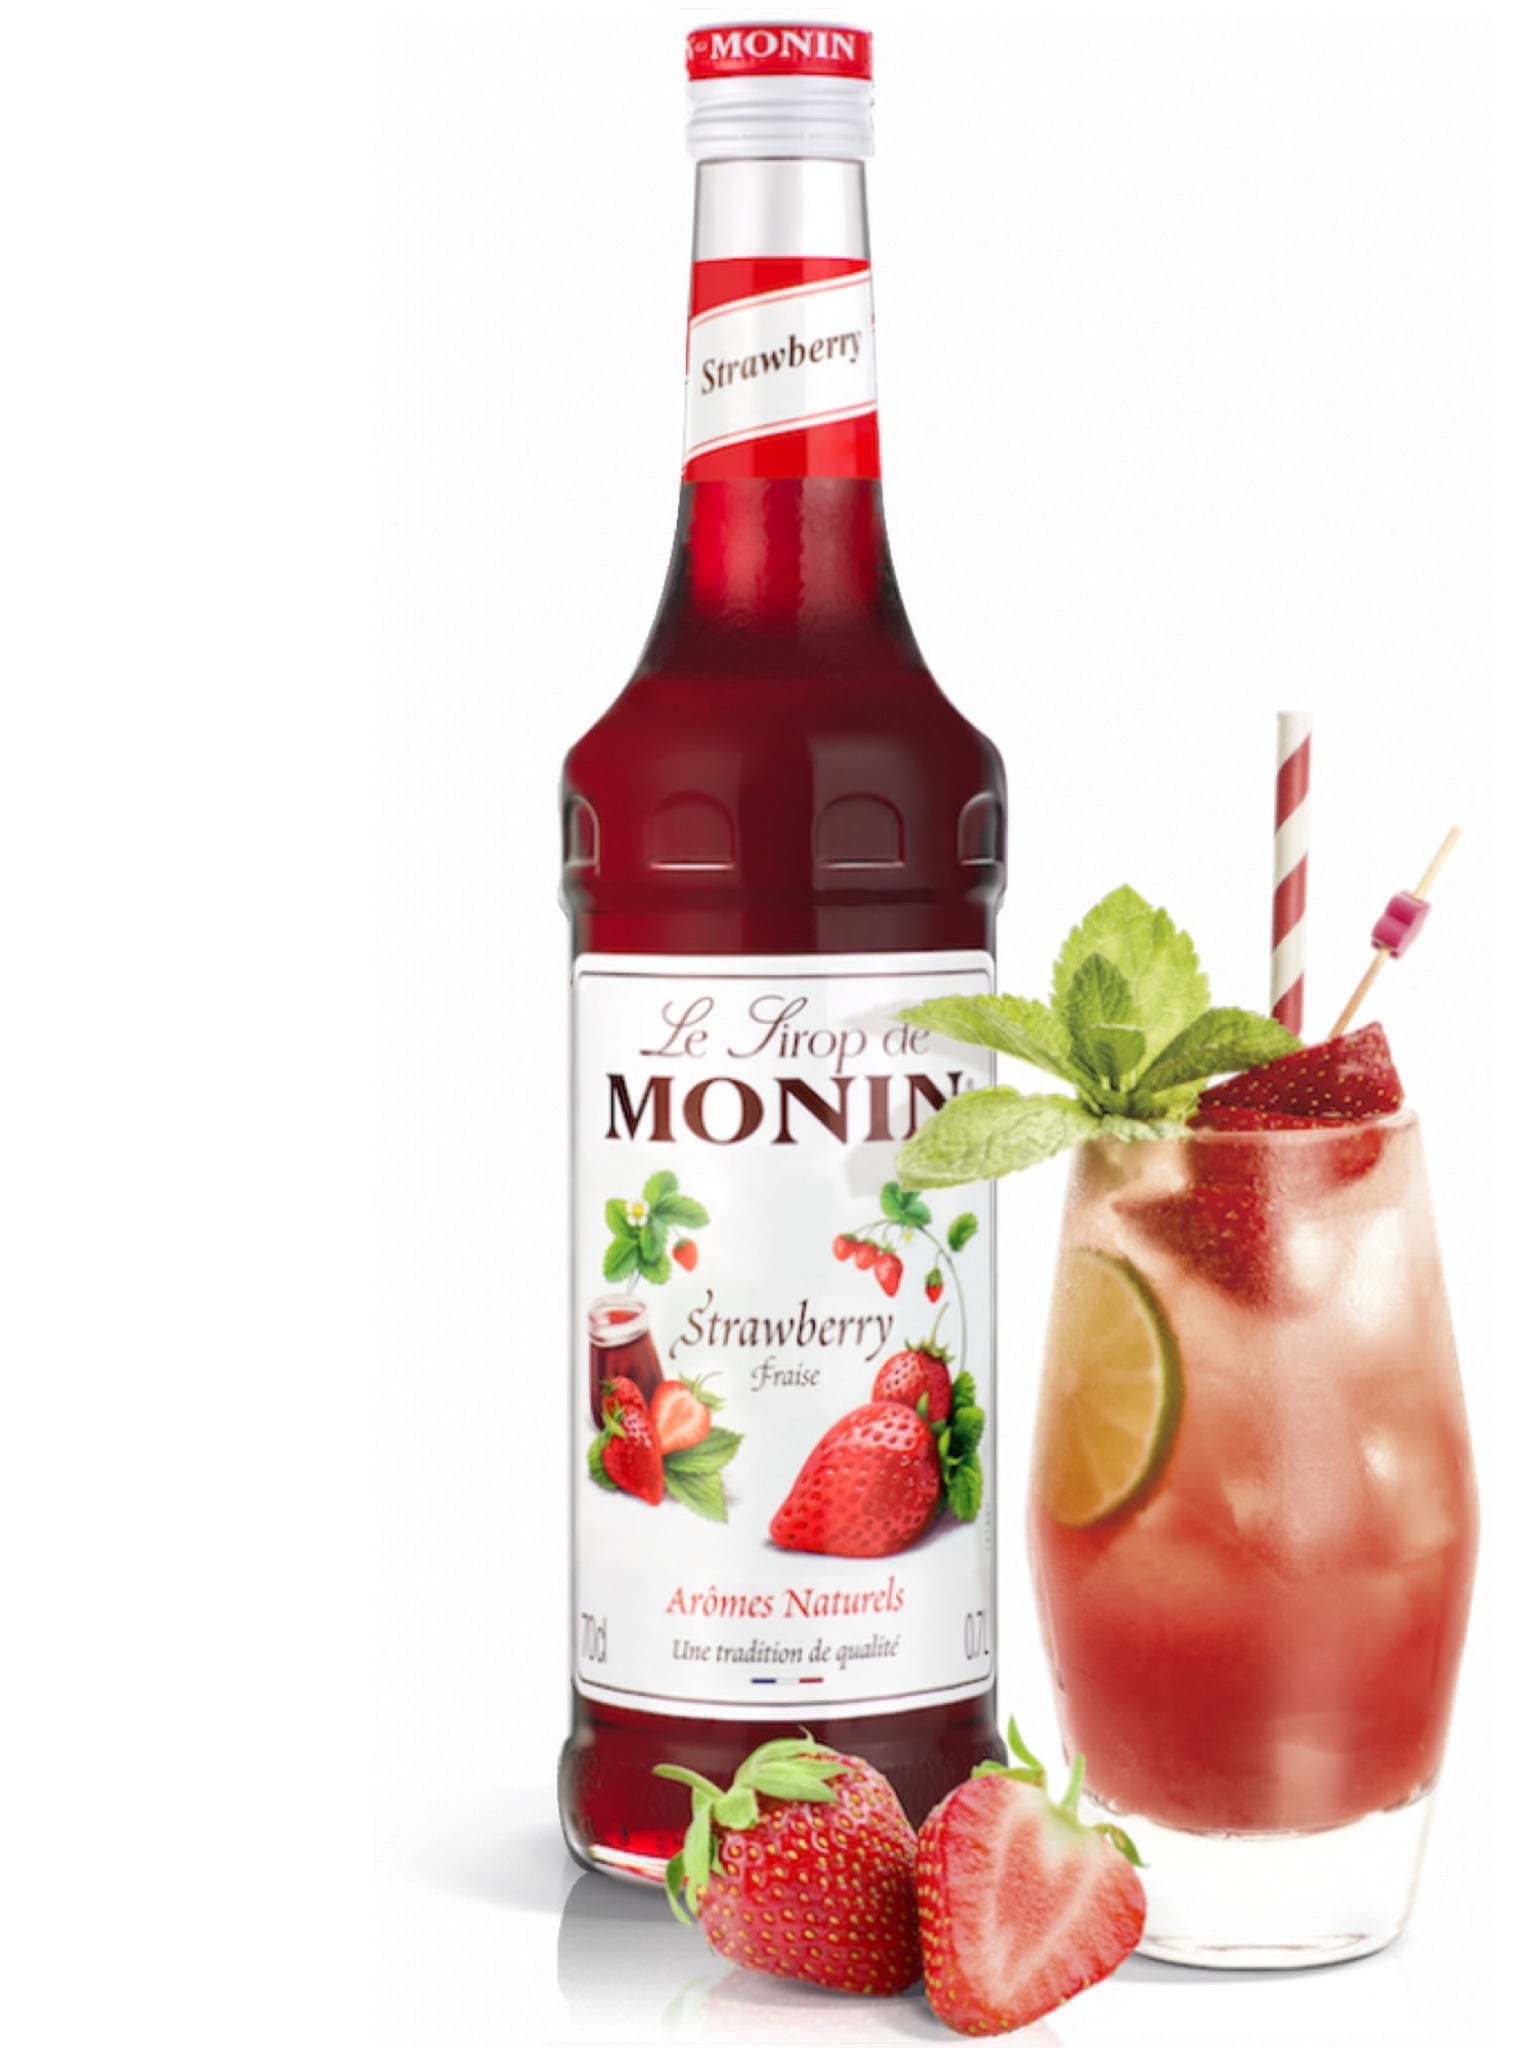 Tilføj en frugtagtig twist til dine yndlingsdrinks med Monin Jordbær Sirup, perfekt til enhver lejlighed